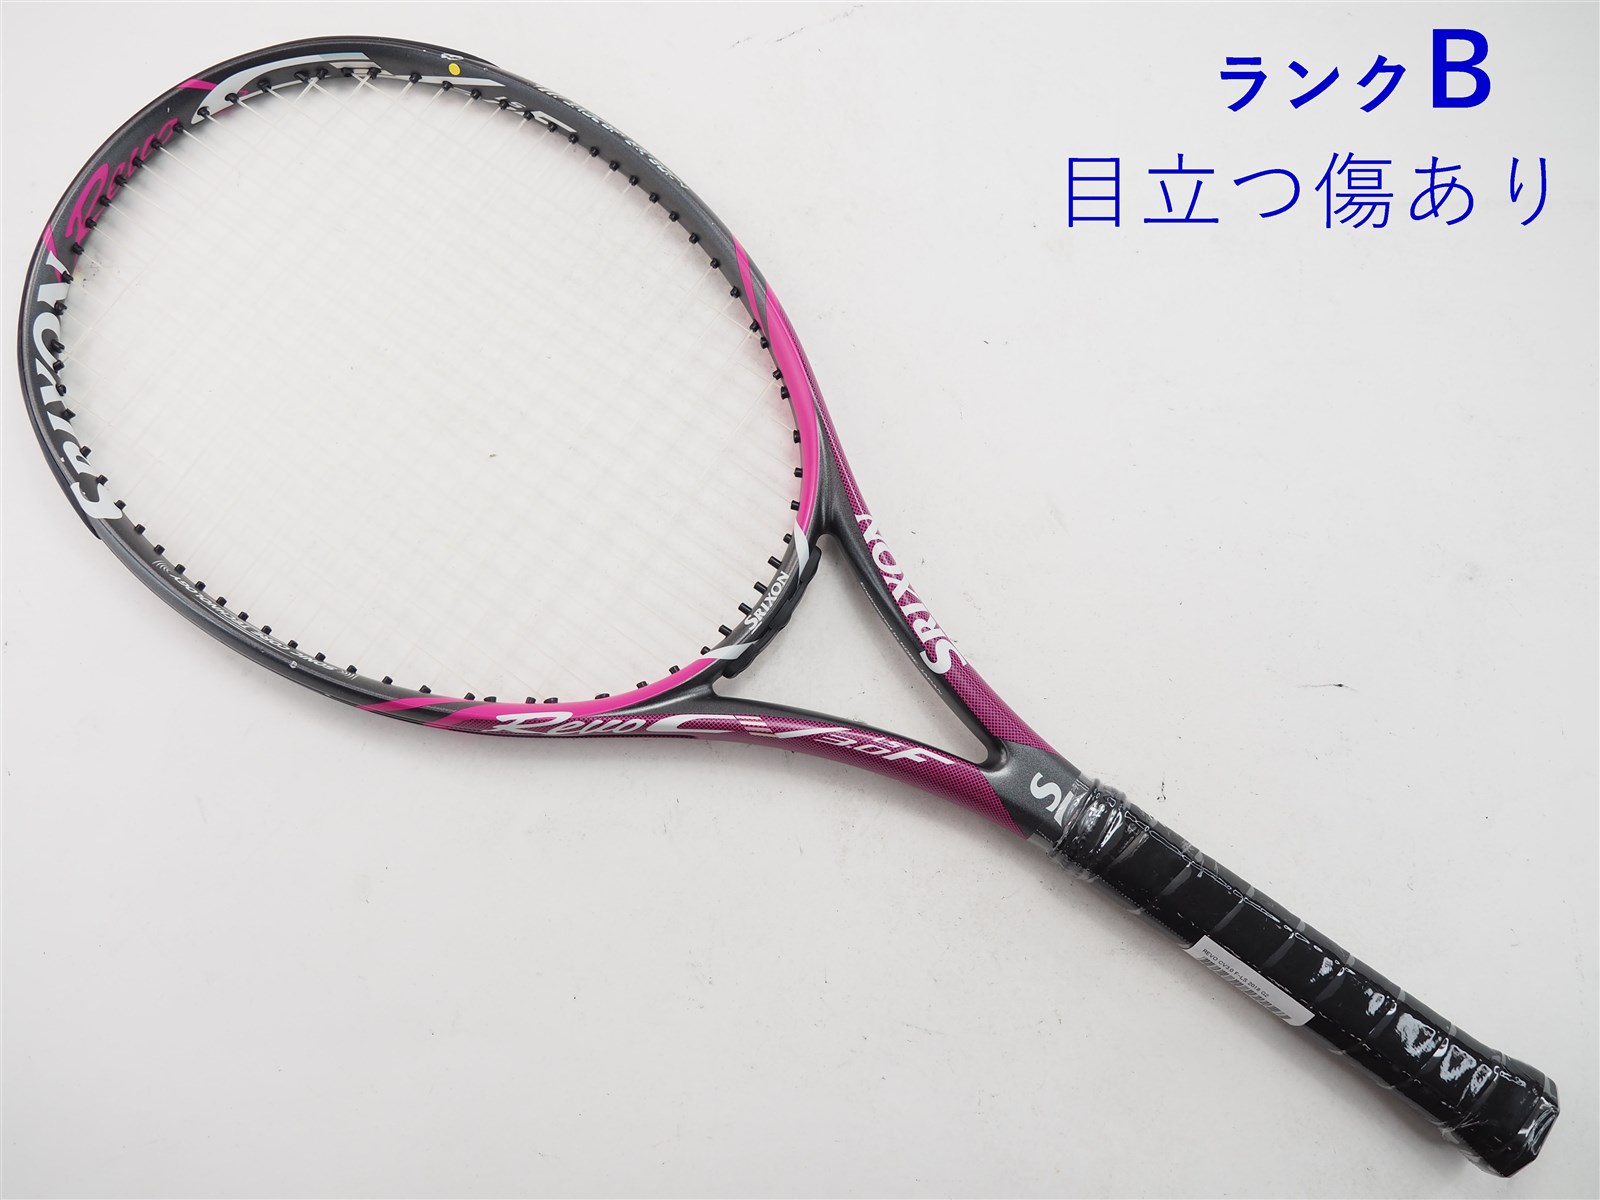 ② SRIXON REVO CS 10.0 硬式用テニスラケット G2ラケット(硬式用)